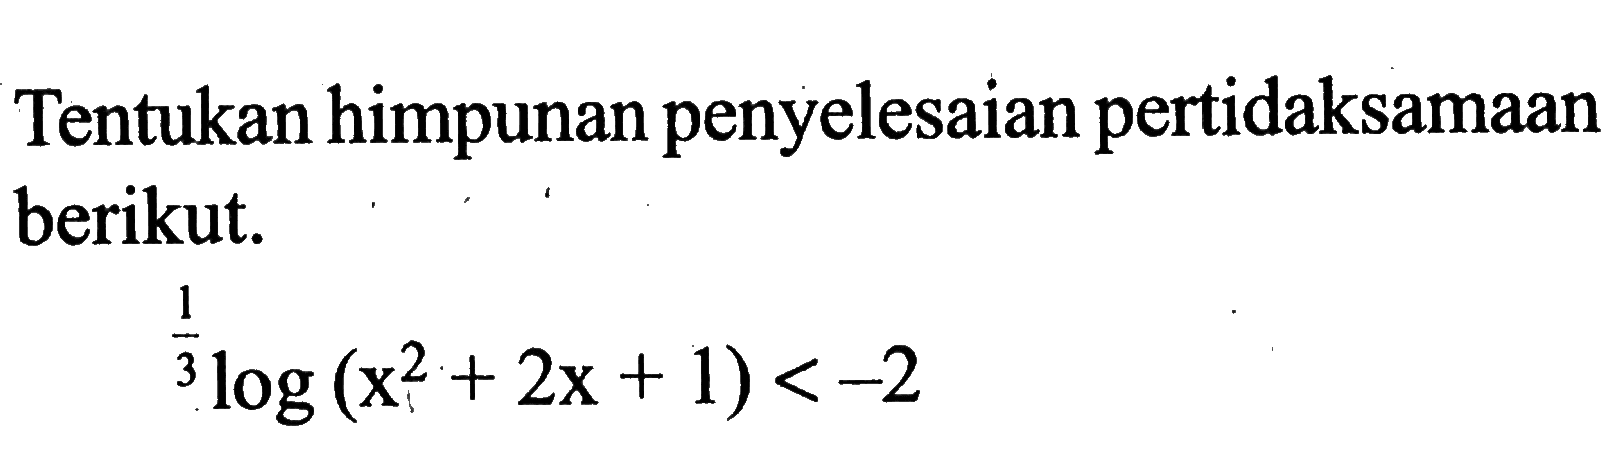 Tentukan himpunan penyelesaian pertidaksamaan berikut. (1/3)log(x^2+2x+1) < -2